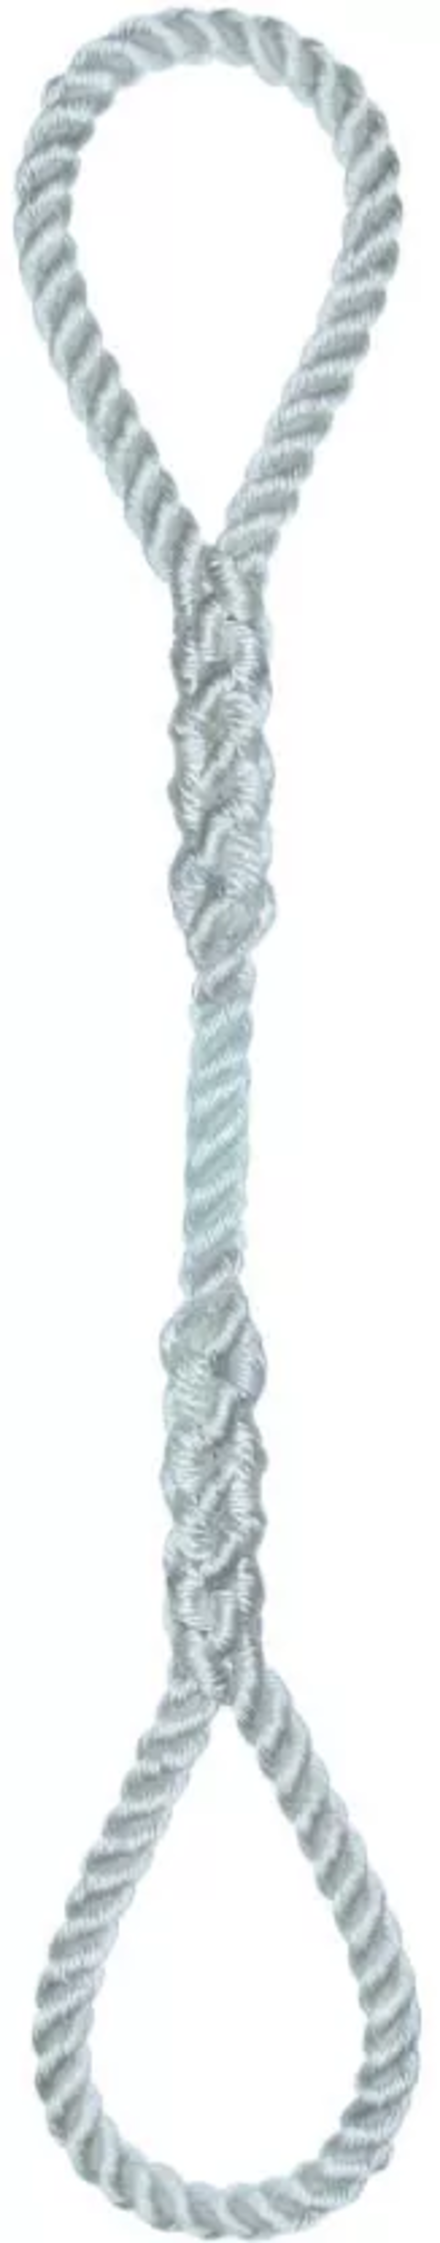 Élingue corde d.12 mm cmu 195 kg 2 grandes boucles long 1 m LEVAC - 4404G